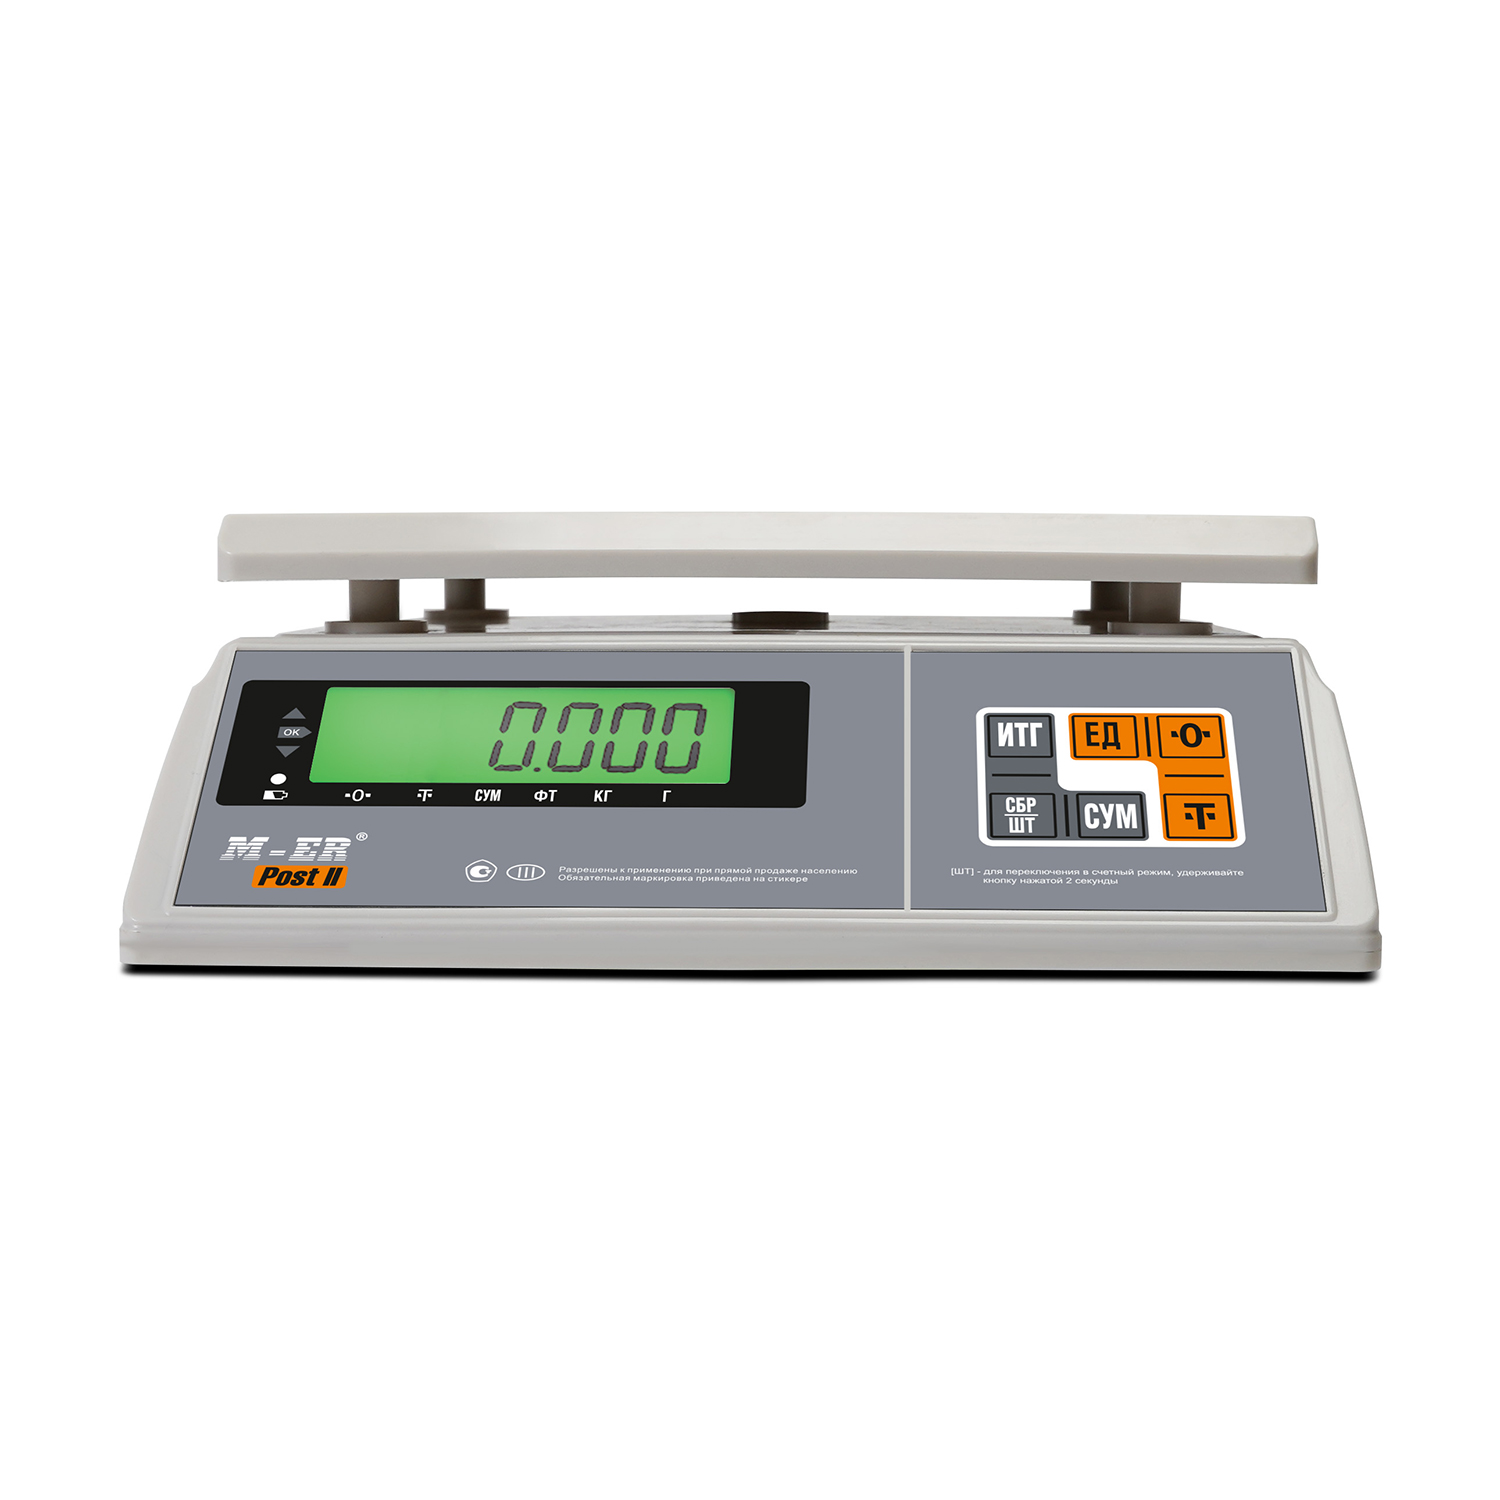 Порционные весы M-ER 326 AFU-6.01 "Post II" LCD RS-232 (3097)